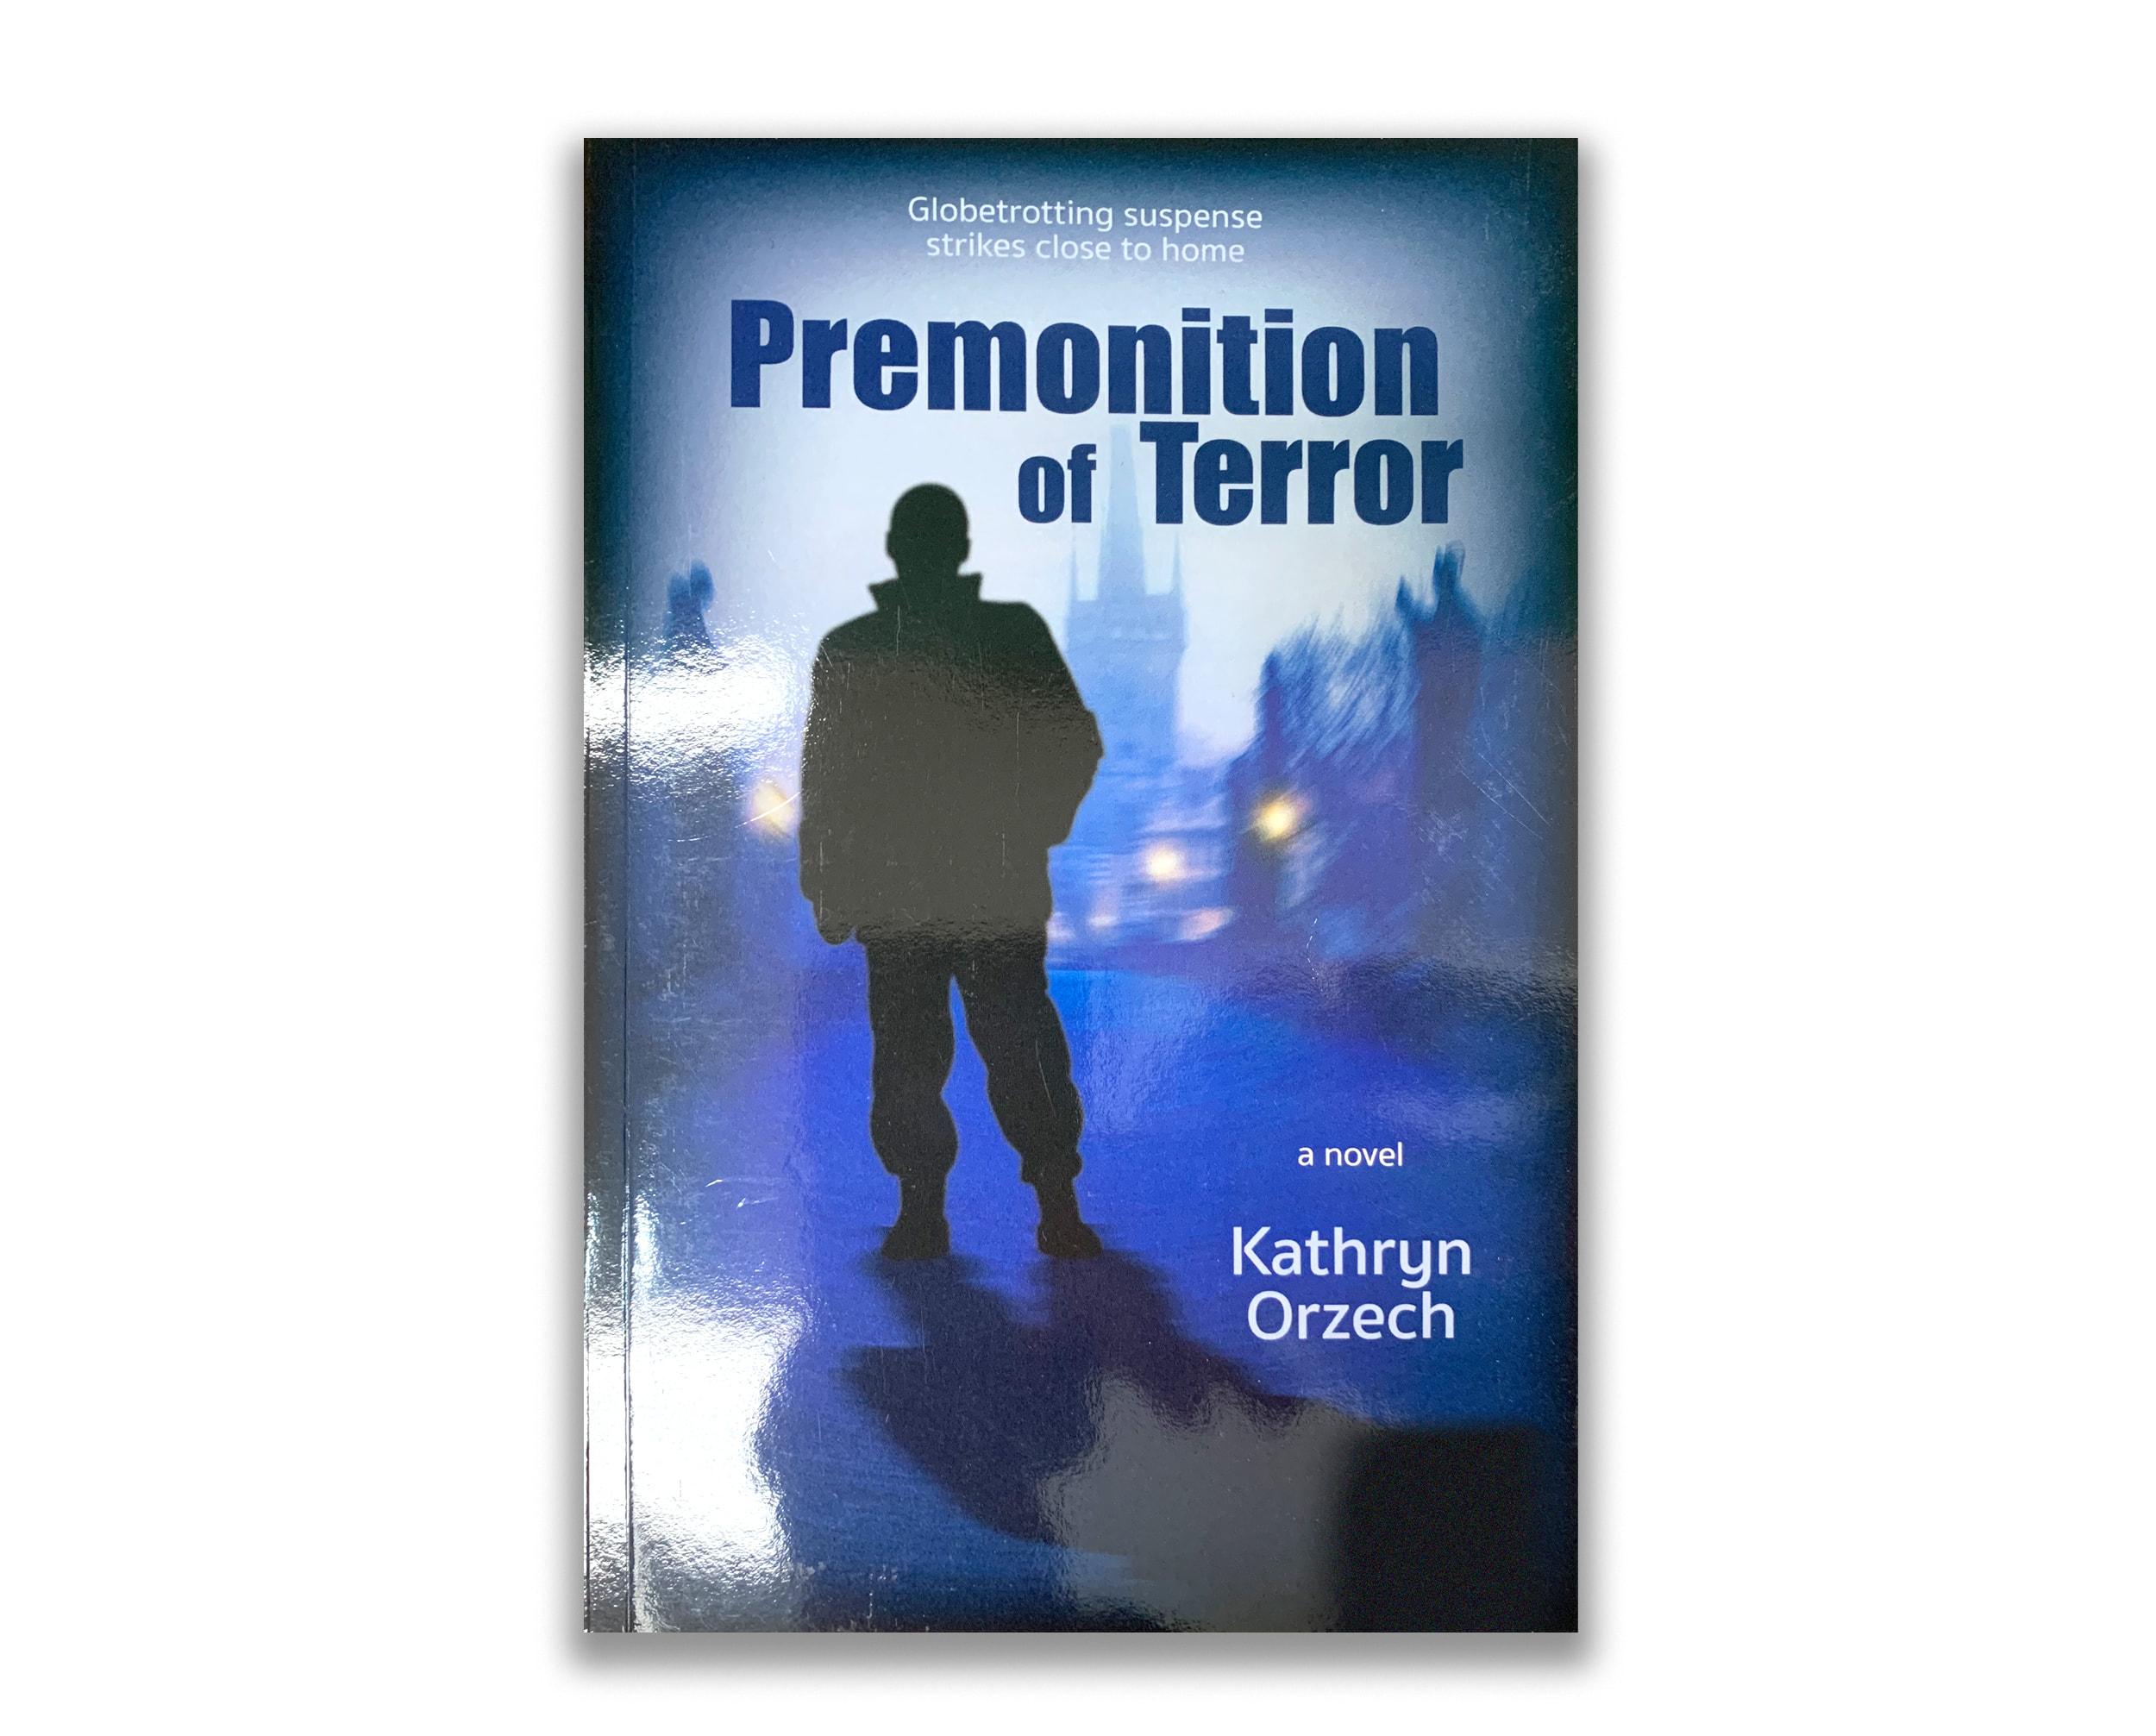 Premonition of Terror by Kathryn Orzech